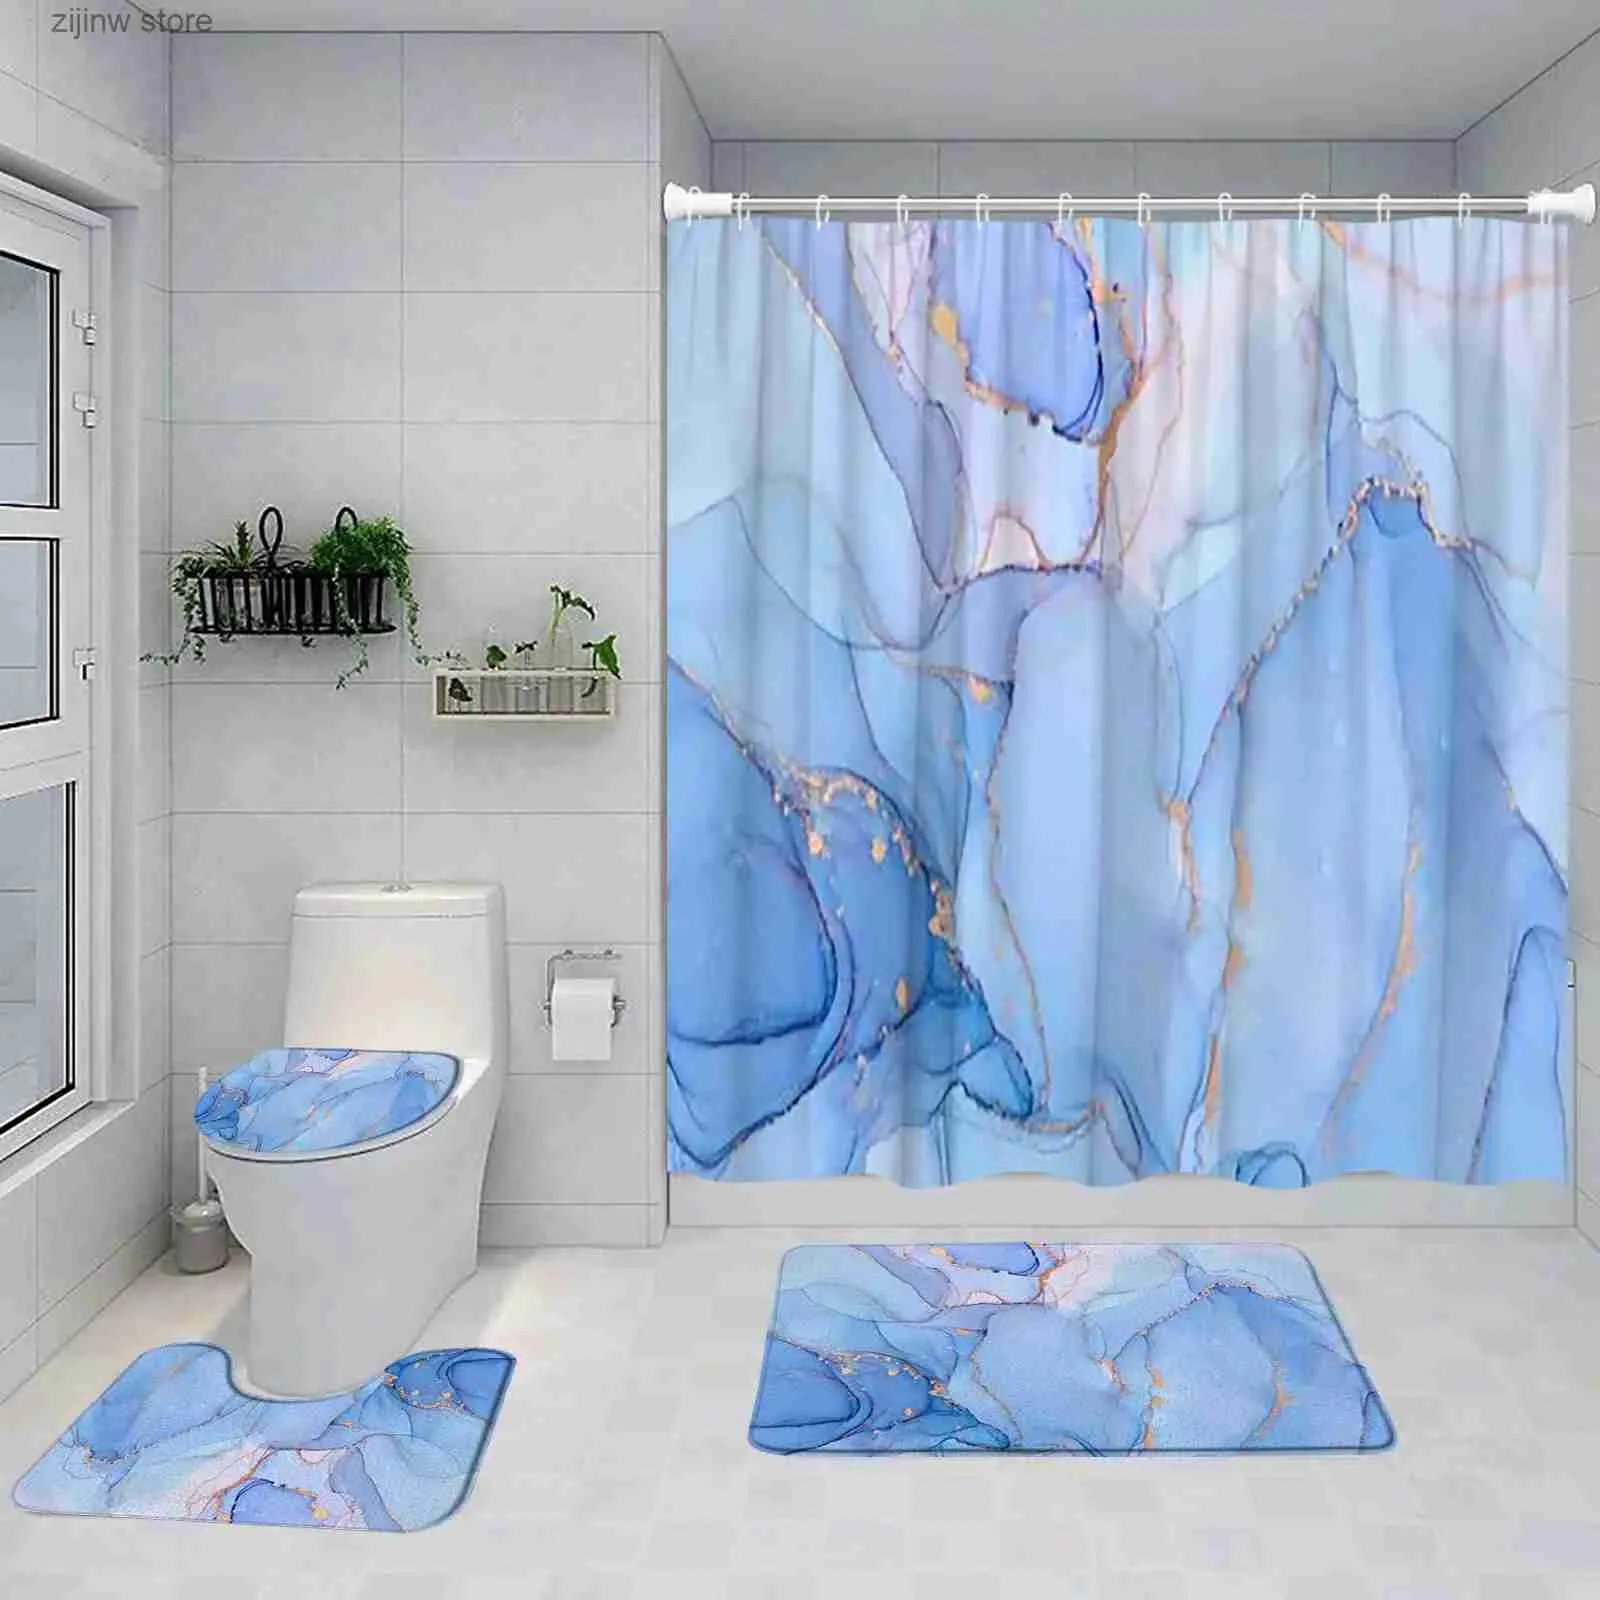 シャワーカーテンブルーマーブルシャワーカーテンセットアート抽象塗装モダンバスルーム装飾バスマットペデスタルラグノンスリップカーペットトイレの蓋カバーY240316